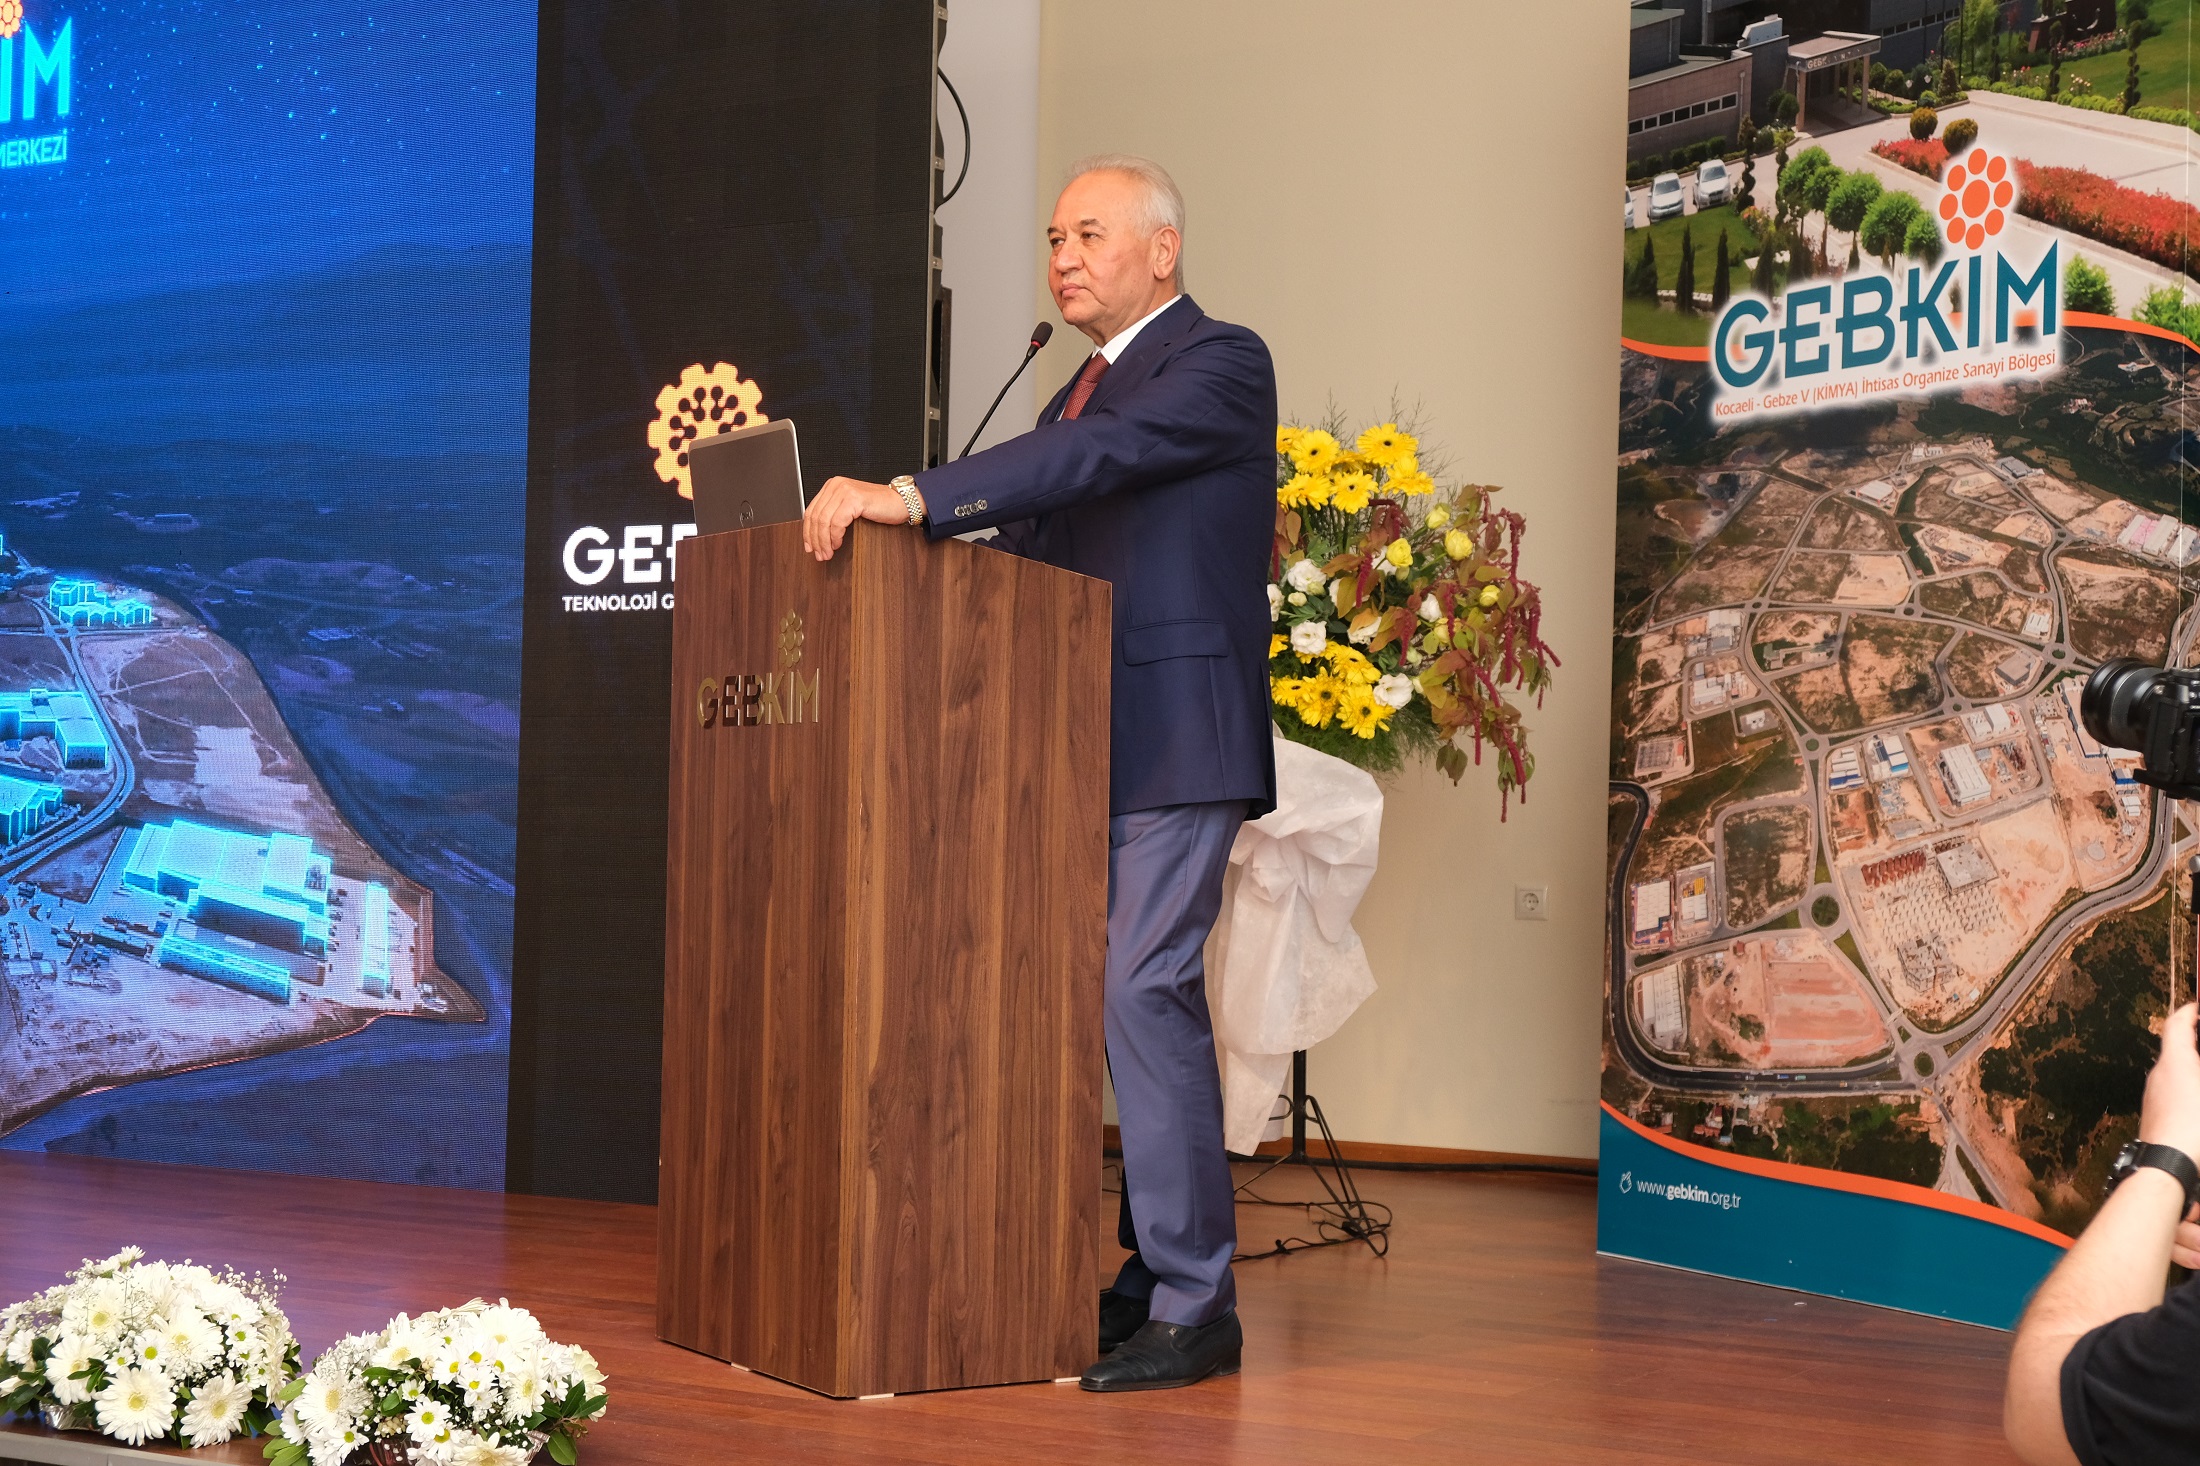 Türkiye’nin ilk kimya ihtisas OSB’si GEBKİM’de Teknoloji Geliştirme ve Çözüm Merkezi’nin (GEBTEK) açılışı gerçekleştirildi.